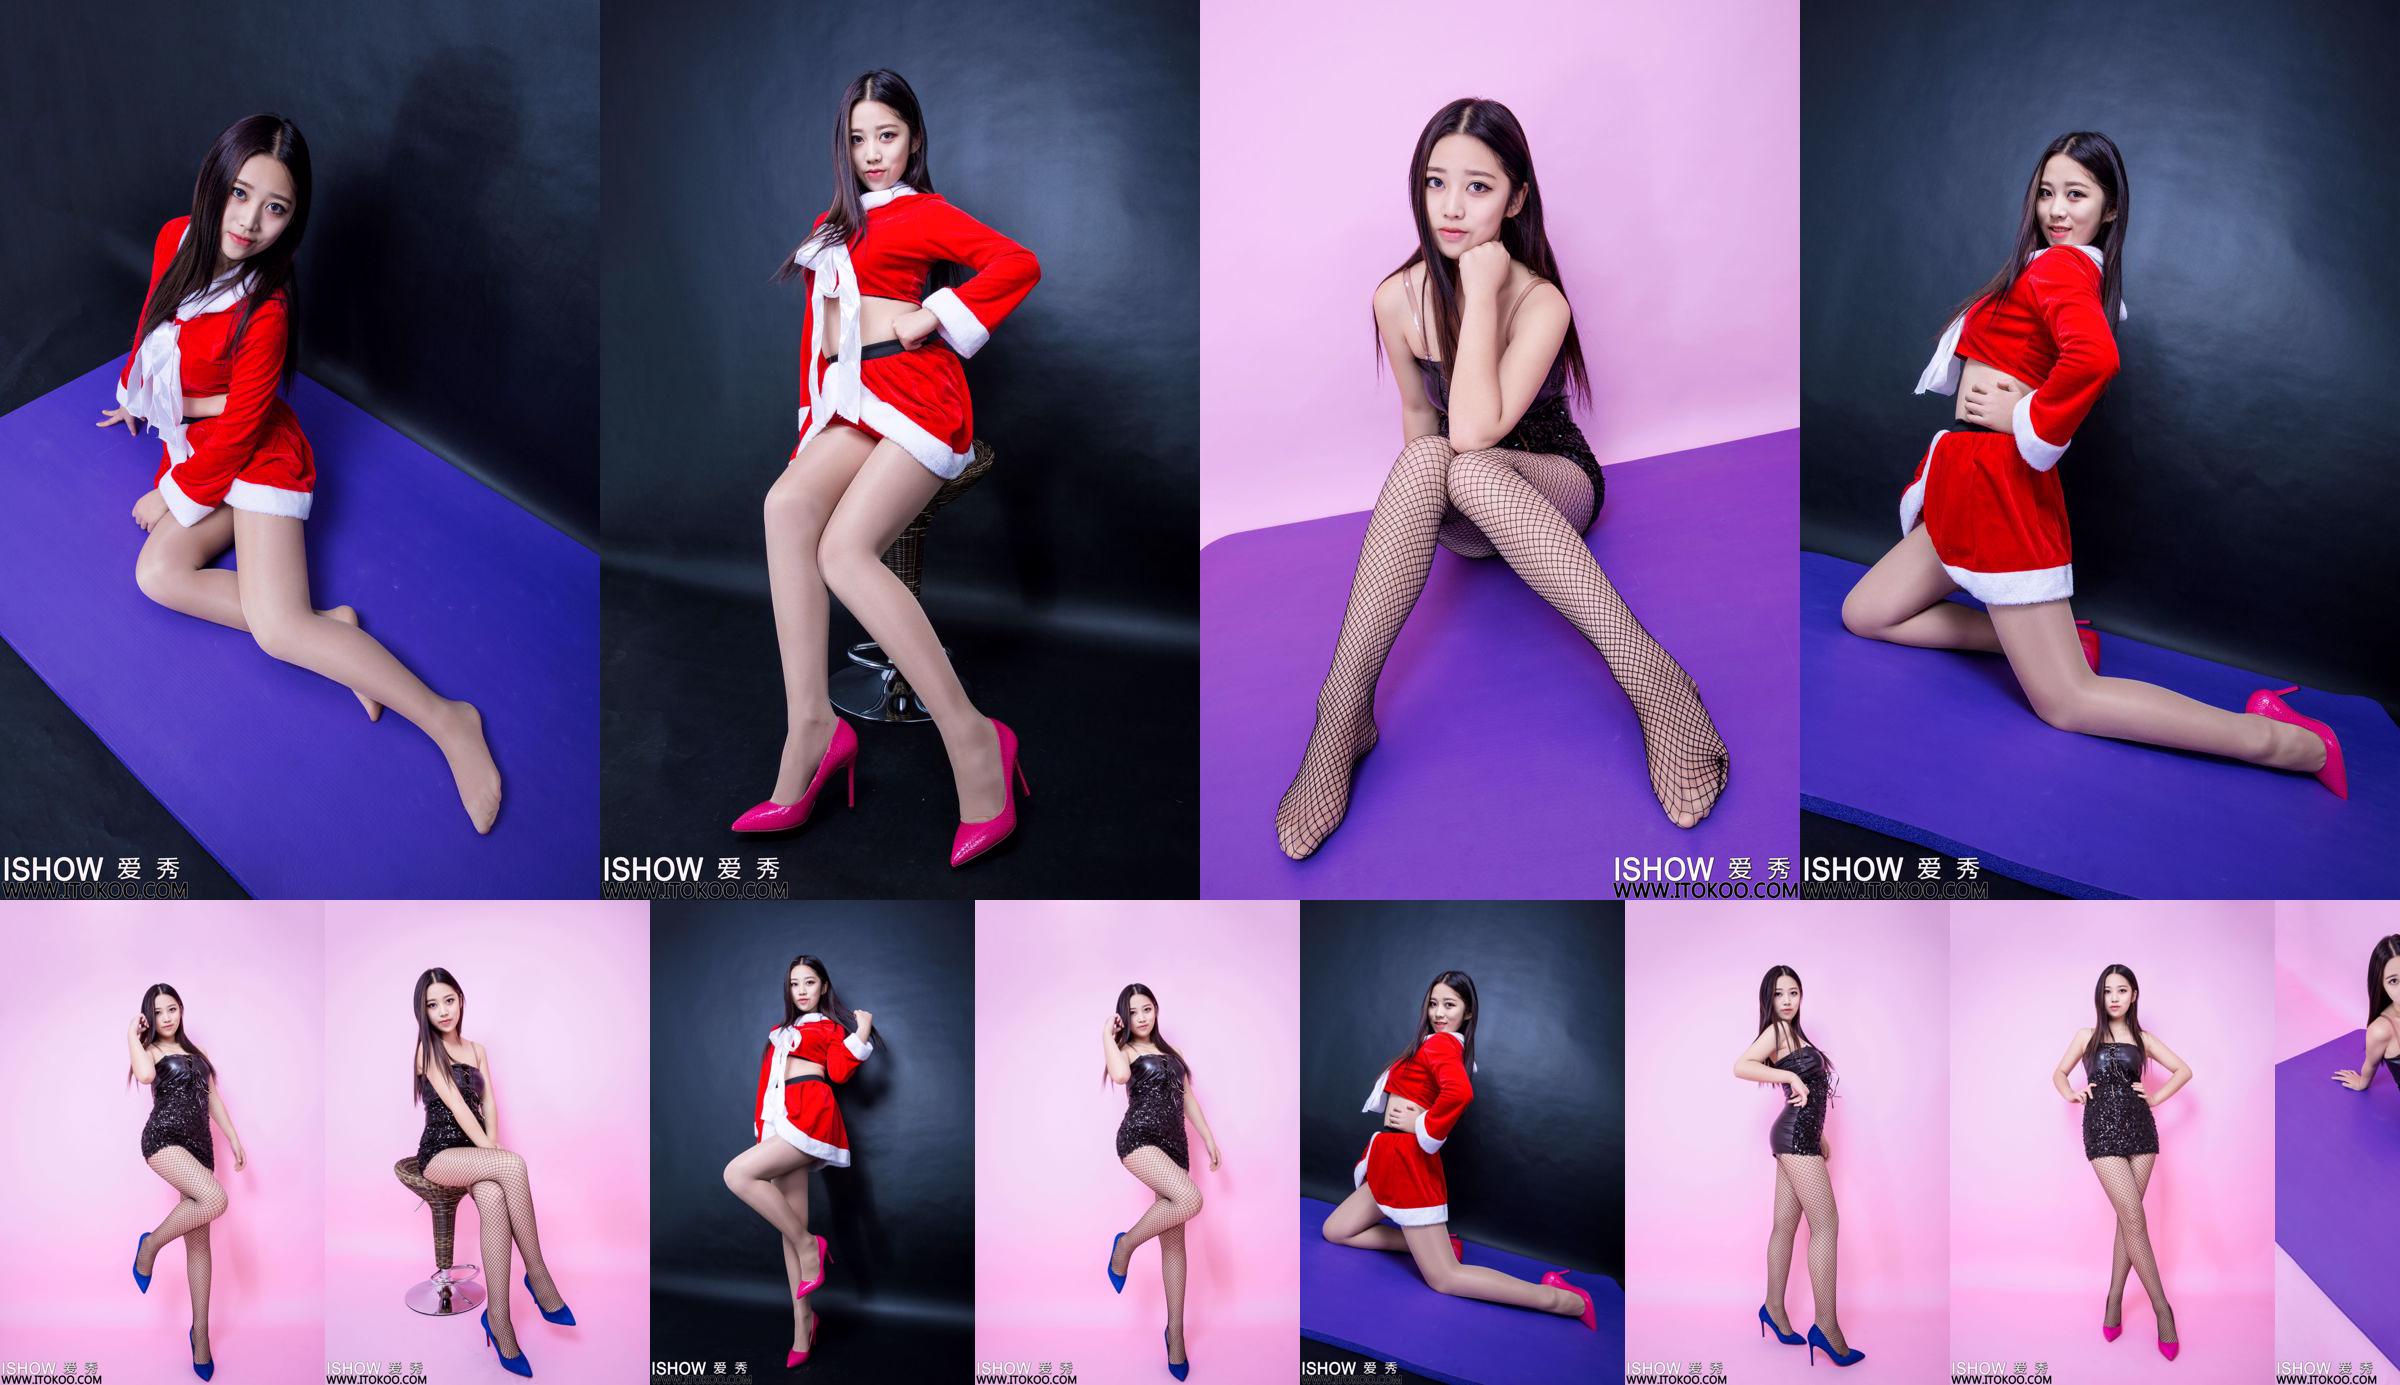 [Съемка модели Dasheng] No.135 Xiaoqi Сексуальная студенческая одежда No.8a19f1 Страница 7